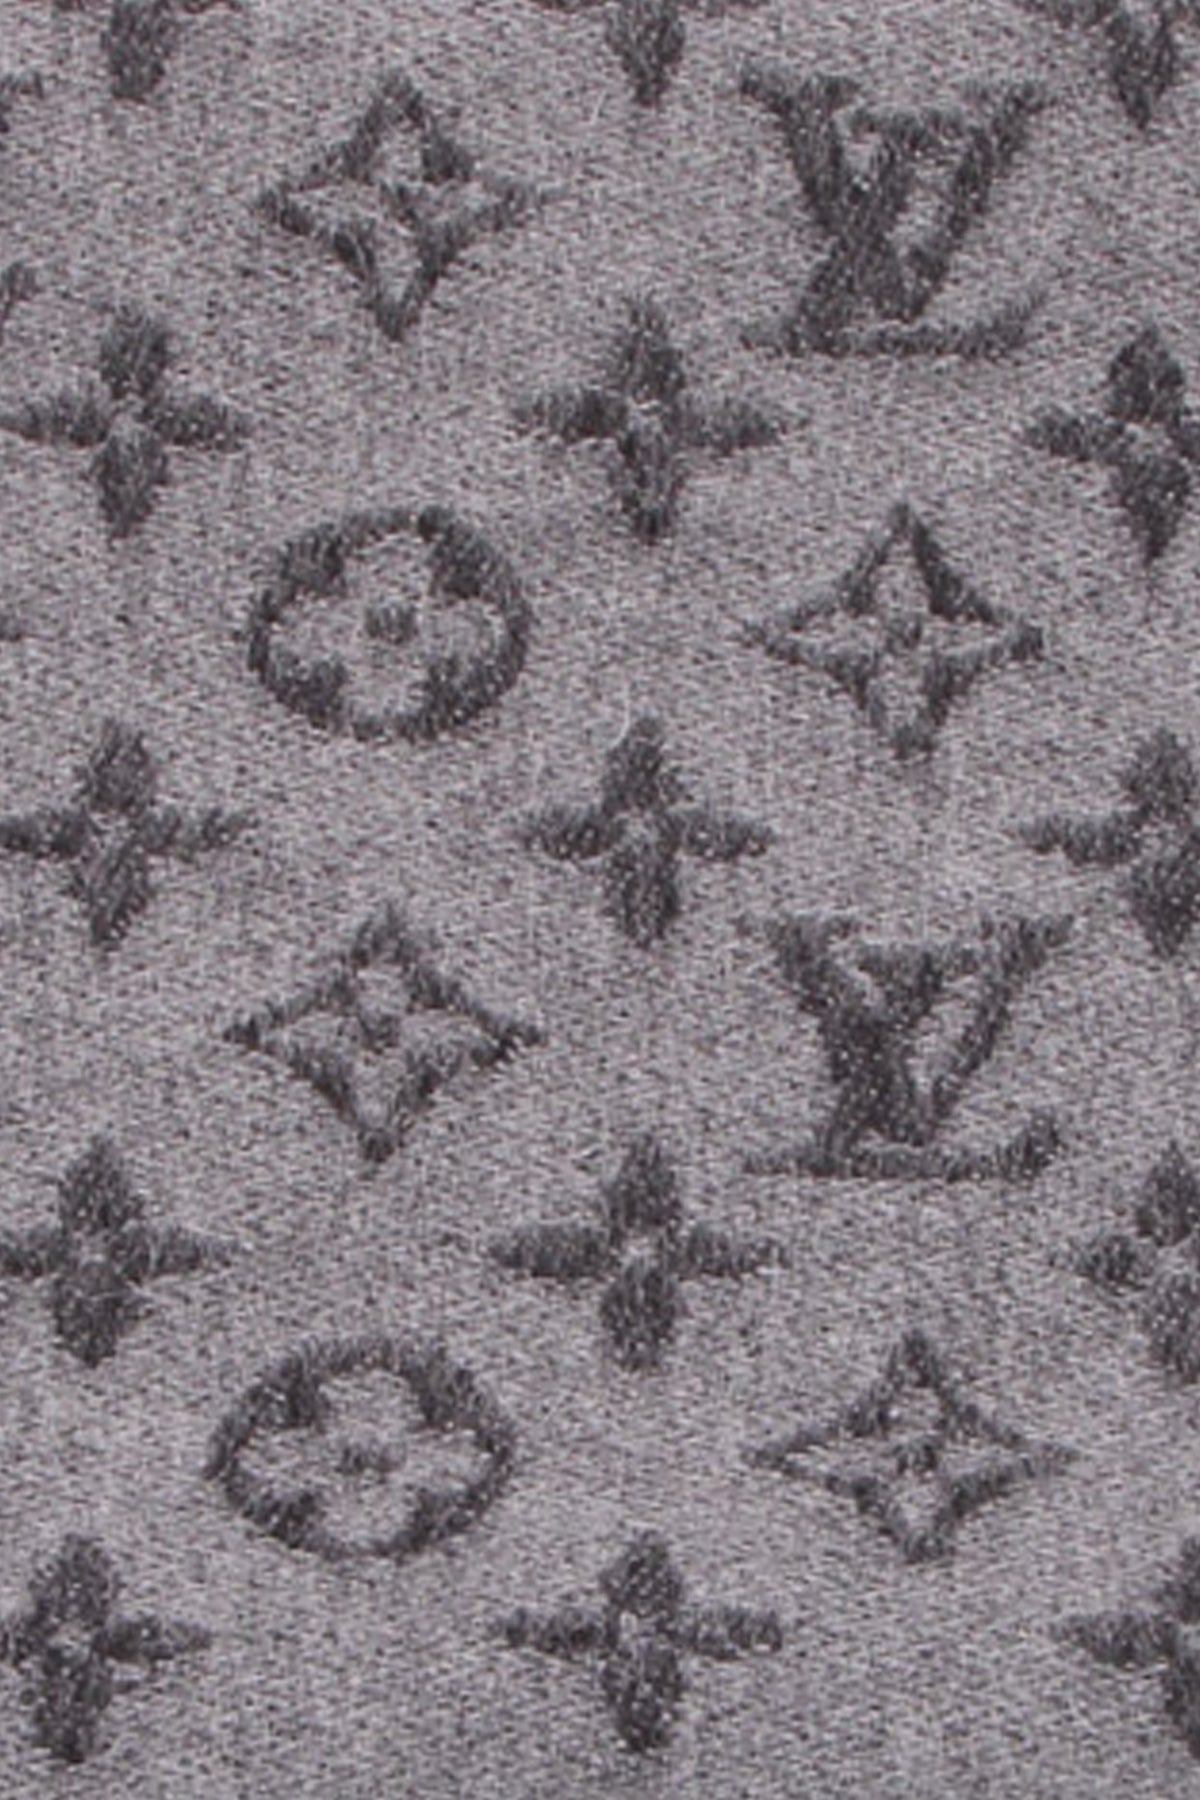 Louis Vuitton MONOGRAM 2020-21FW Monogram Gradient Scarf (M70258)